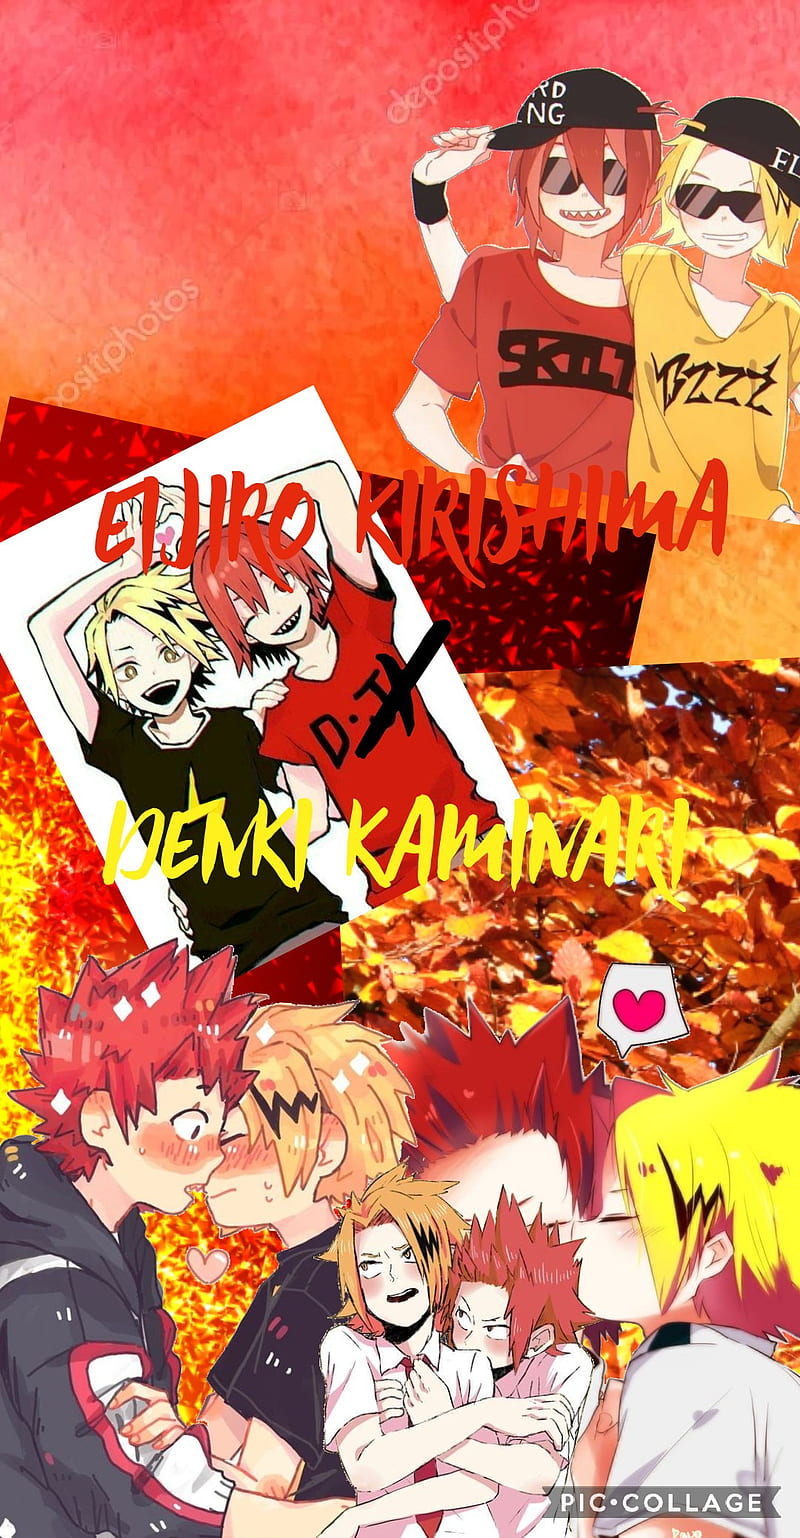  Kirishima Wallpaper Lockscreen   Cute anime wallpaper Anime  wallpaper Cool anime wallpapers